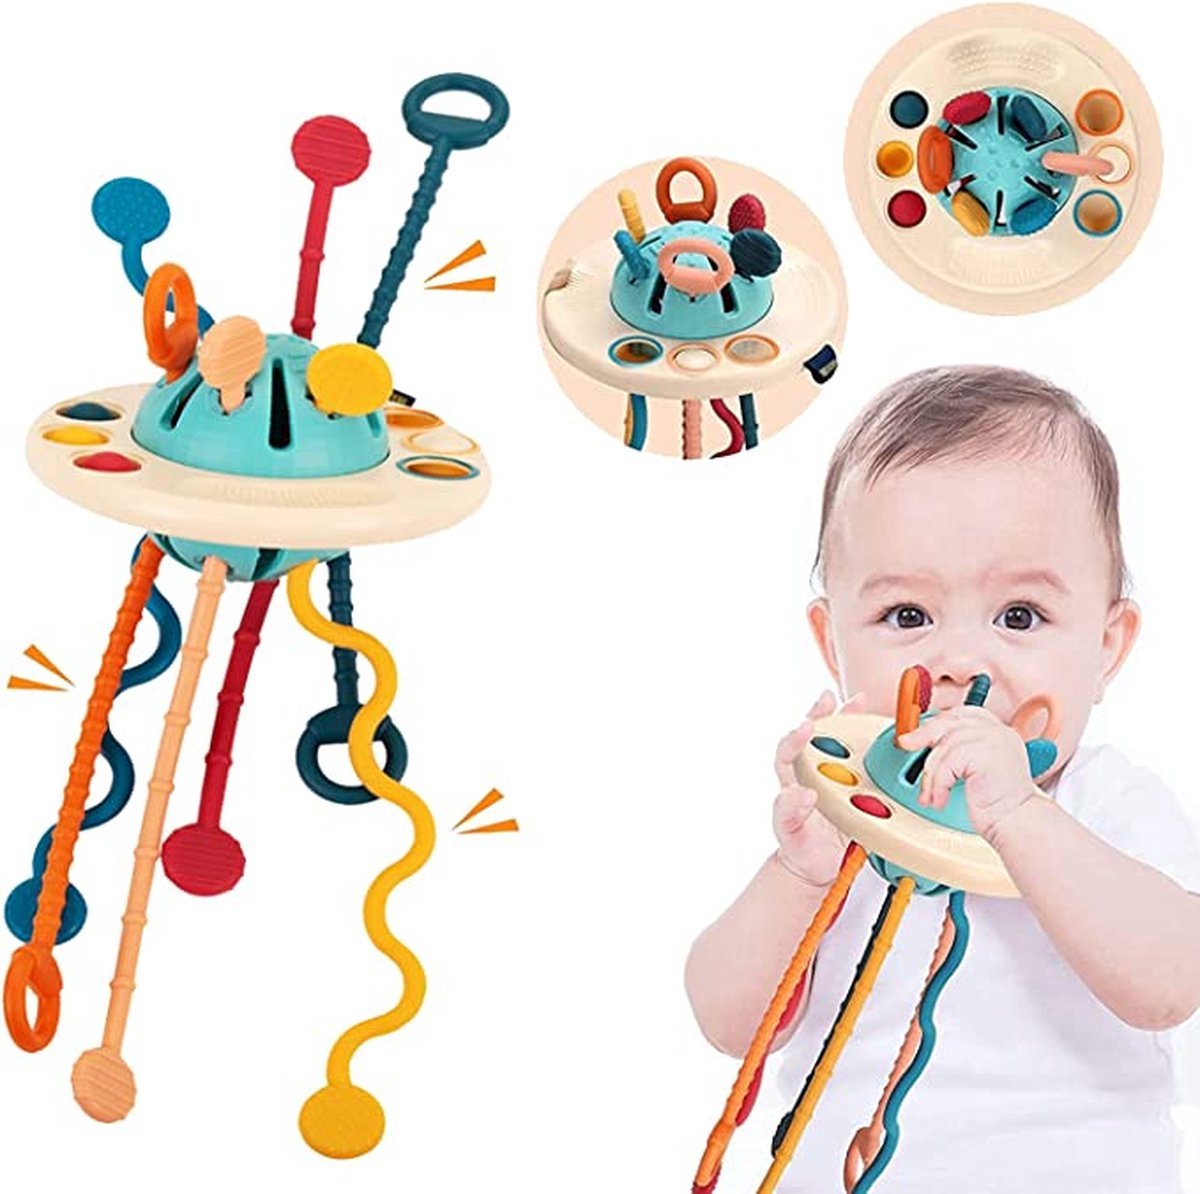 Jouets sensoriels pour bébés, jouets ovnis en silicone de qualité